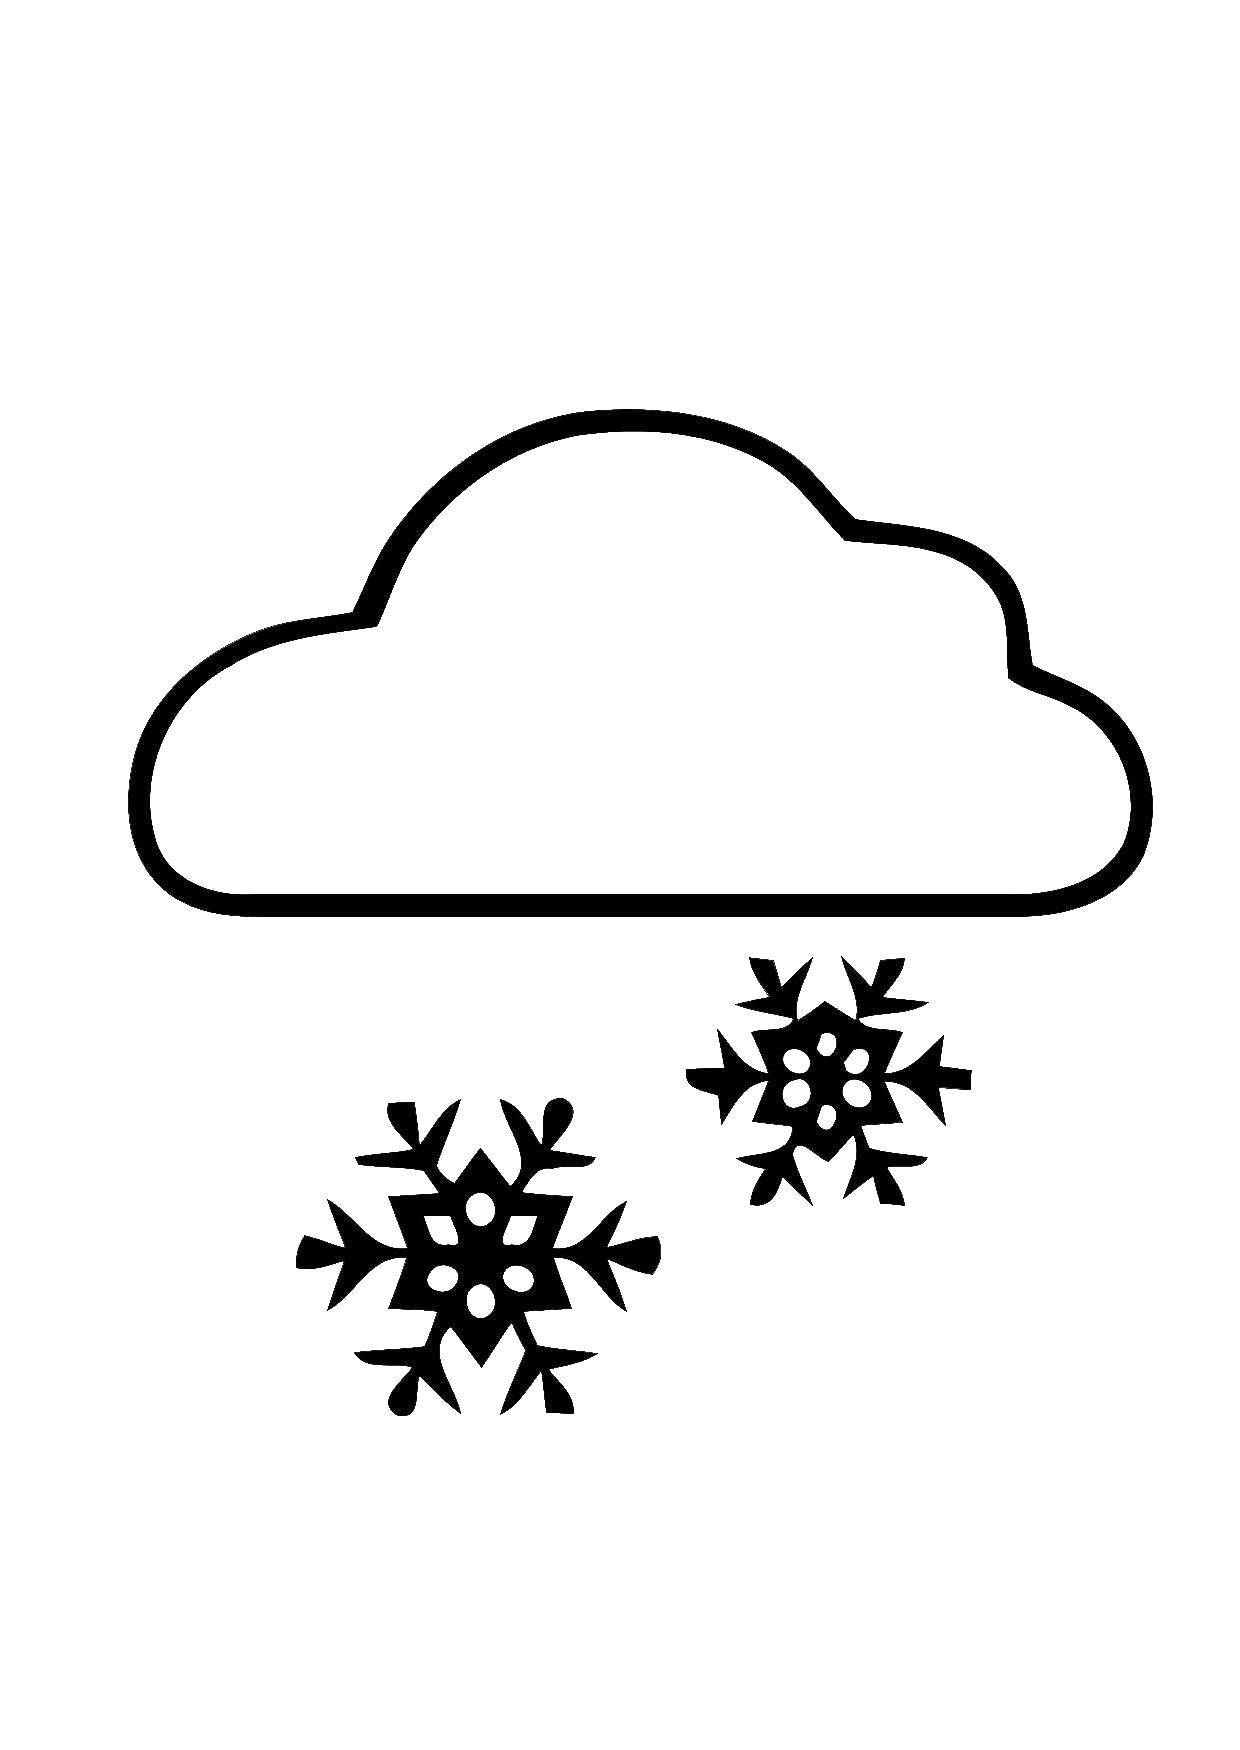 Coloring Snowfall. Category coloring. Tags:  snowfall, snowflake, cloud.